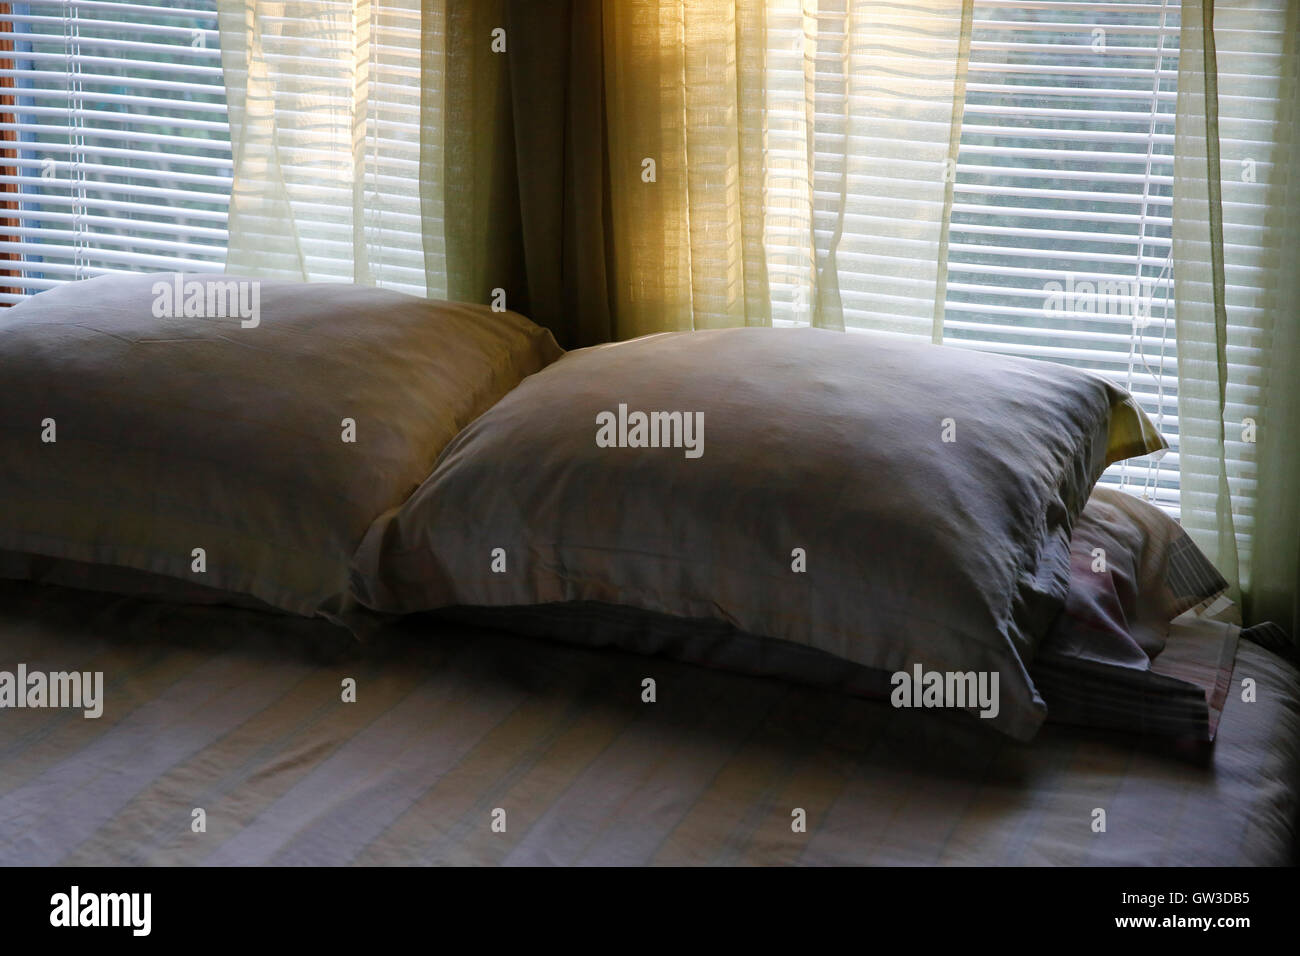 Almohadas en la cama tarde luz filtrada a través de la ventana Foto de stock